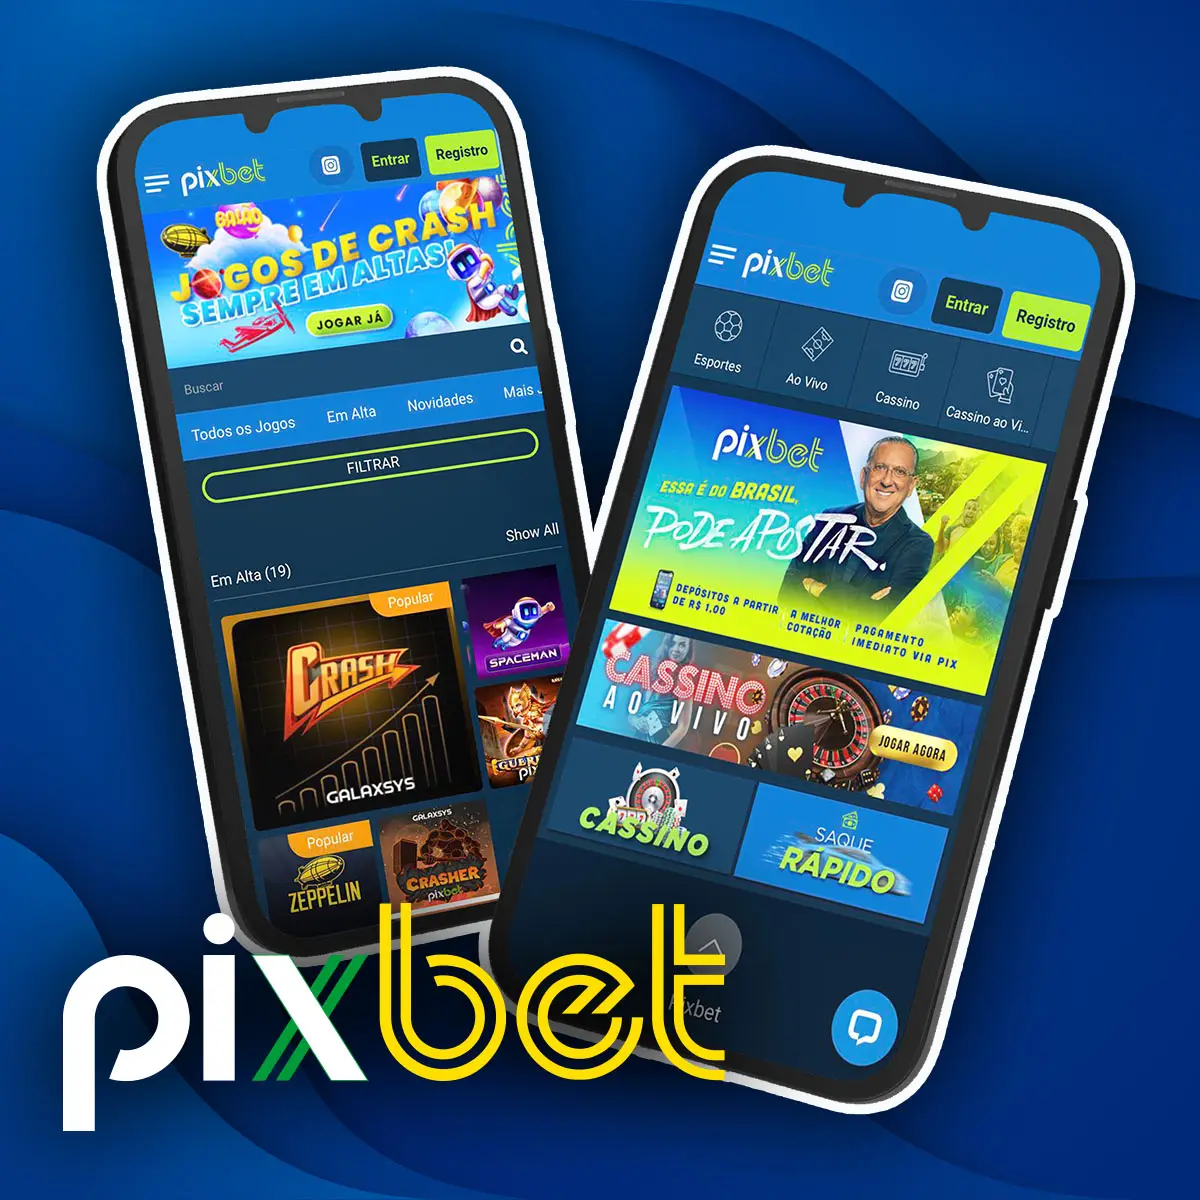 Uma visão geral da aplicação móvel Android e do seu processo de instalação da casa de apostas Pixbet no Brasil